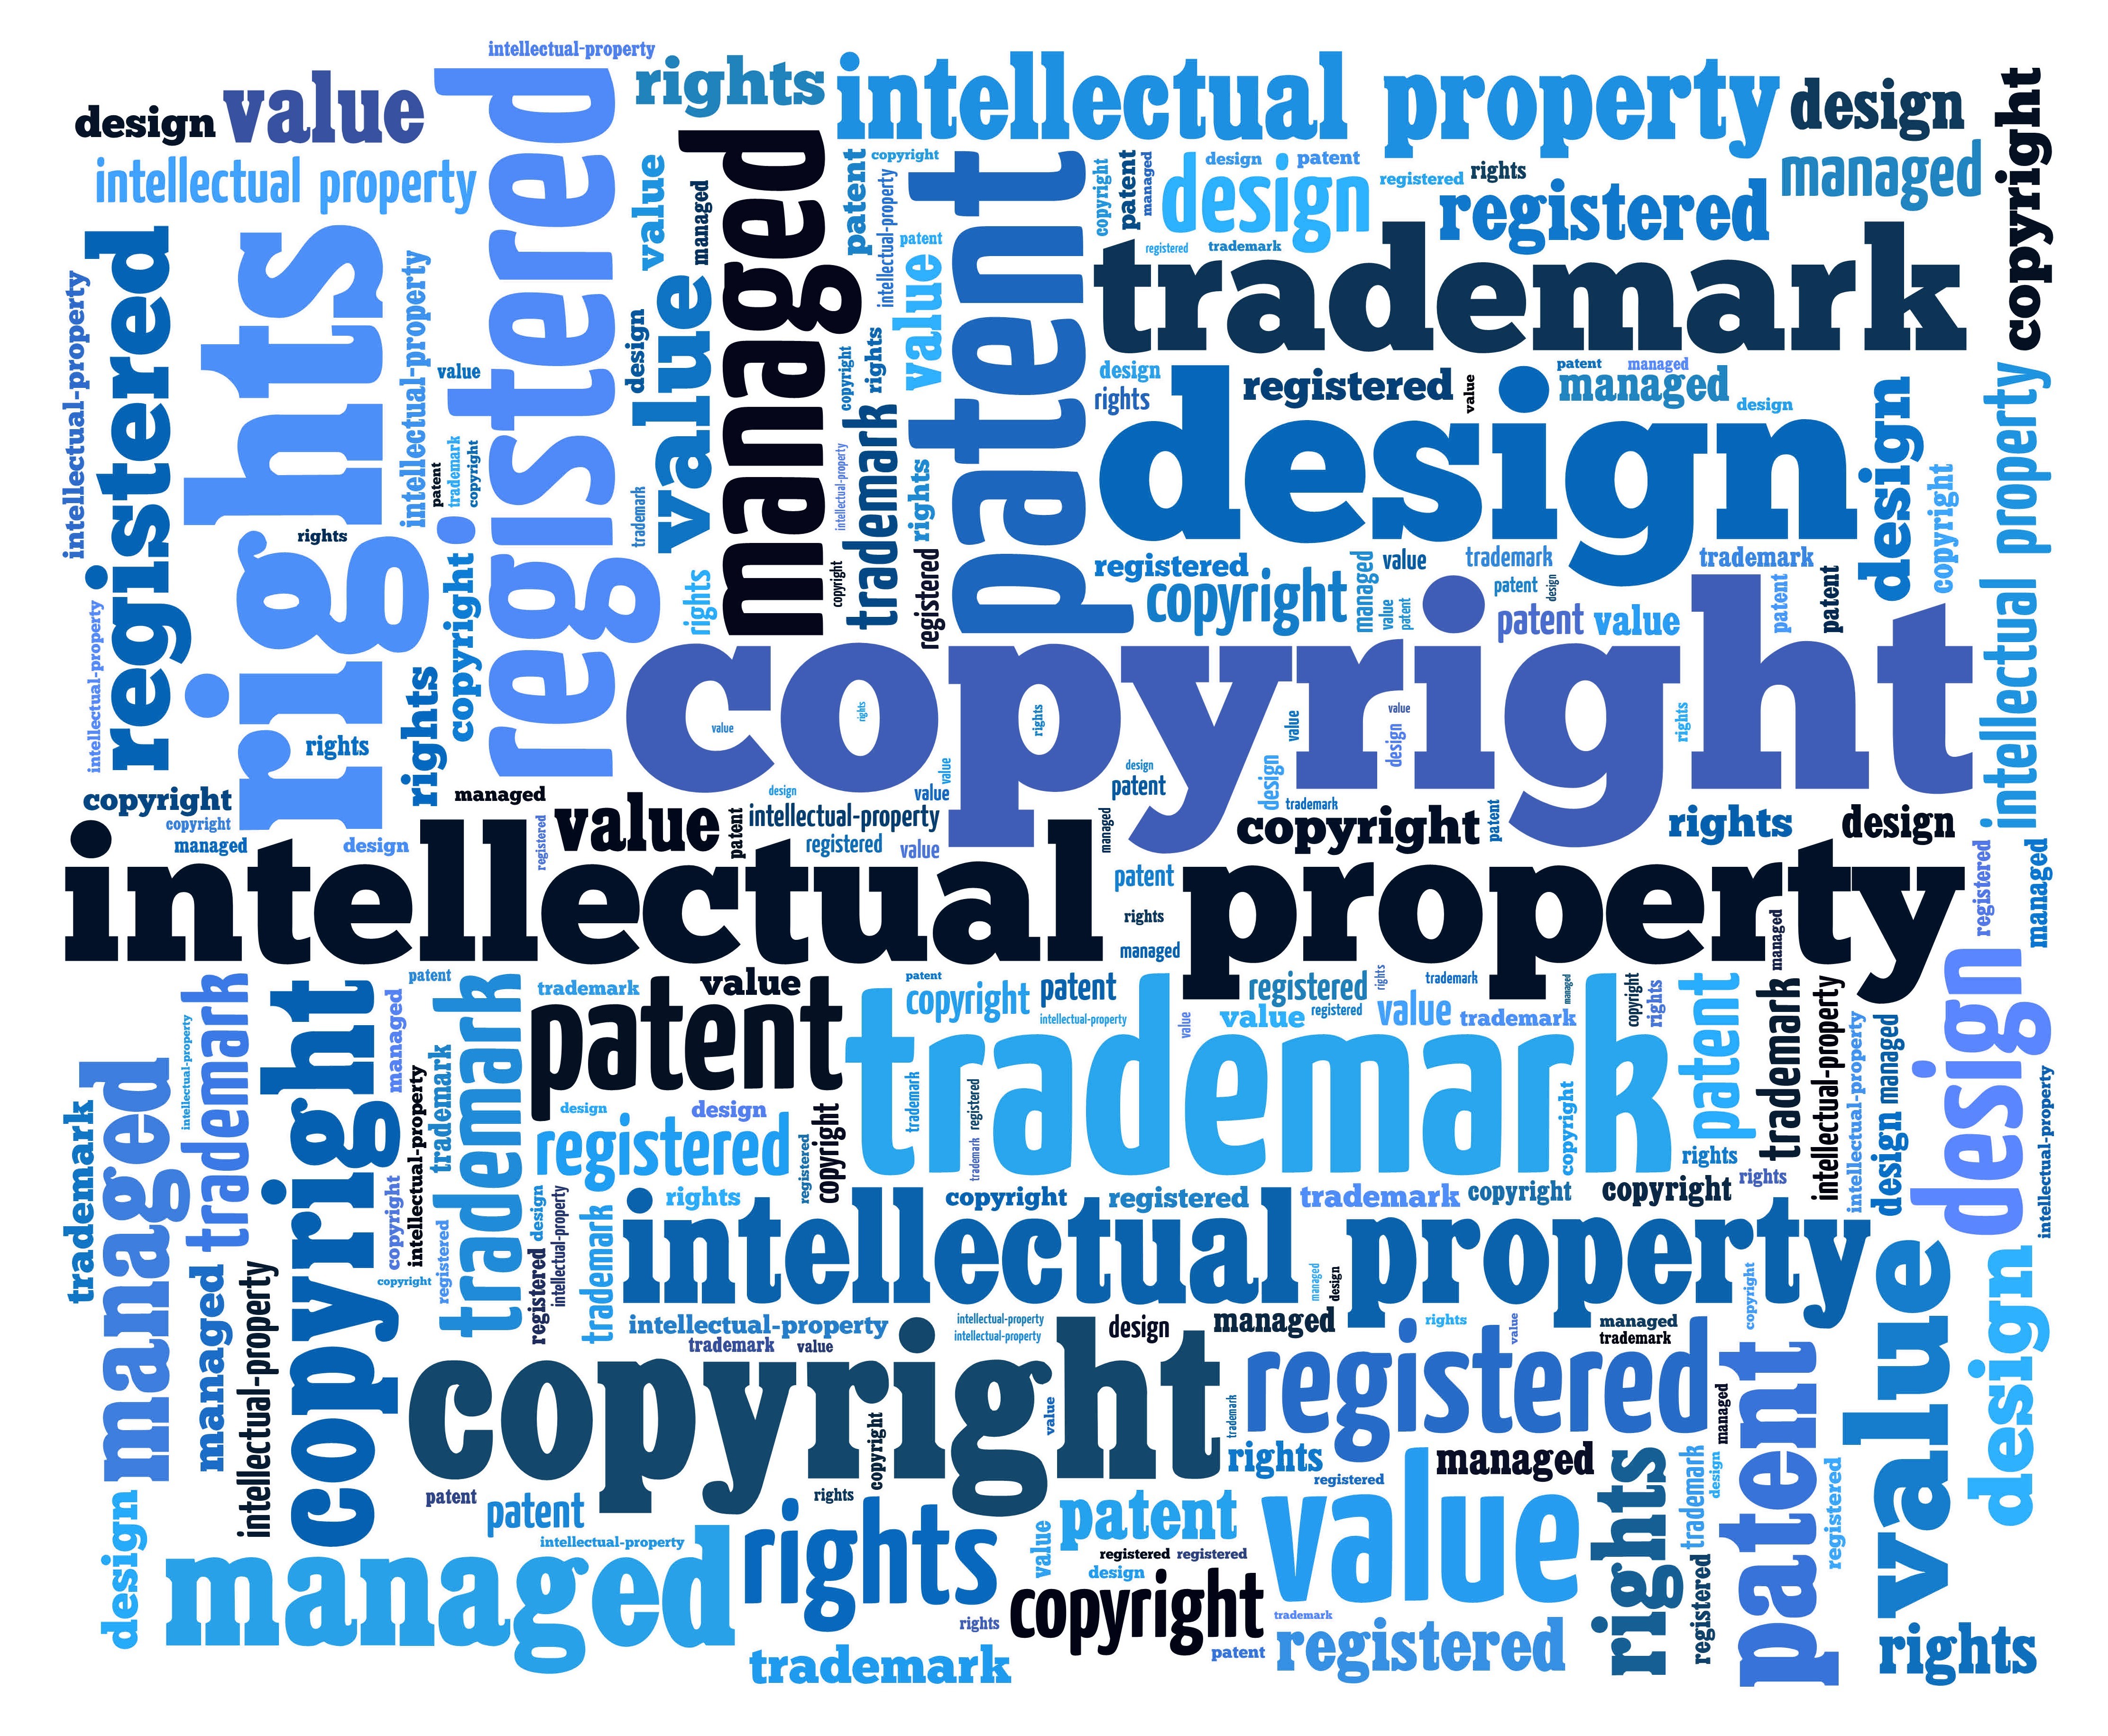 הצעת חוק תאגידים לניהול משותף של זכויות יוצרים ומבצעים, התשע"ד – 2014